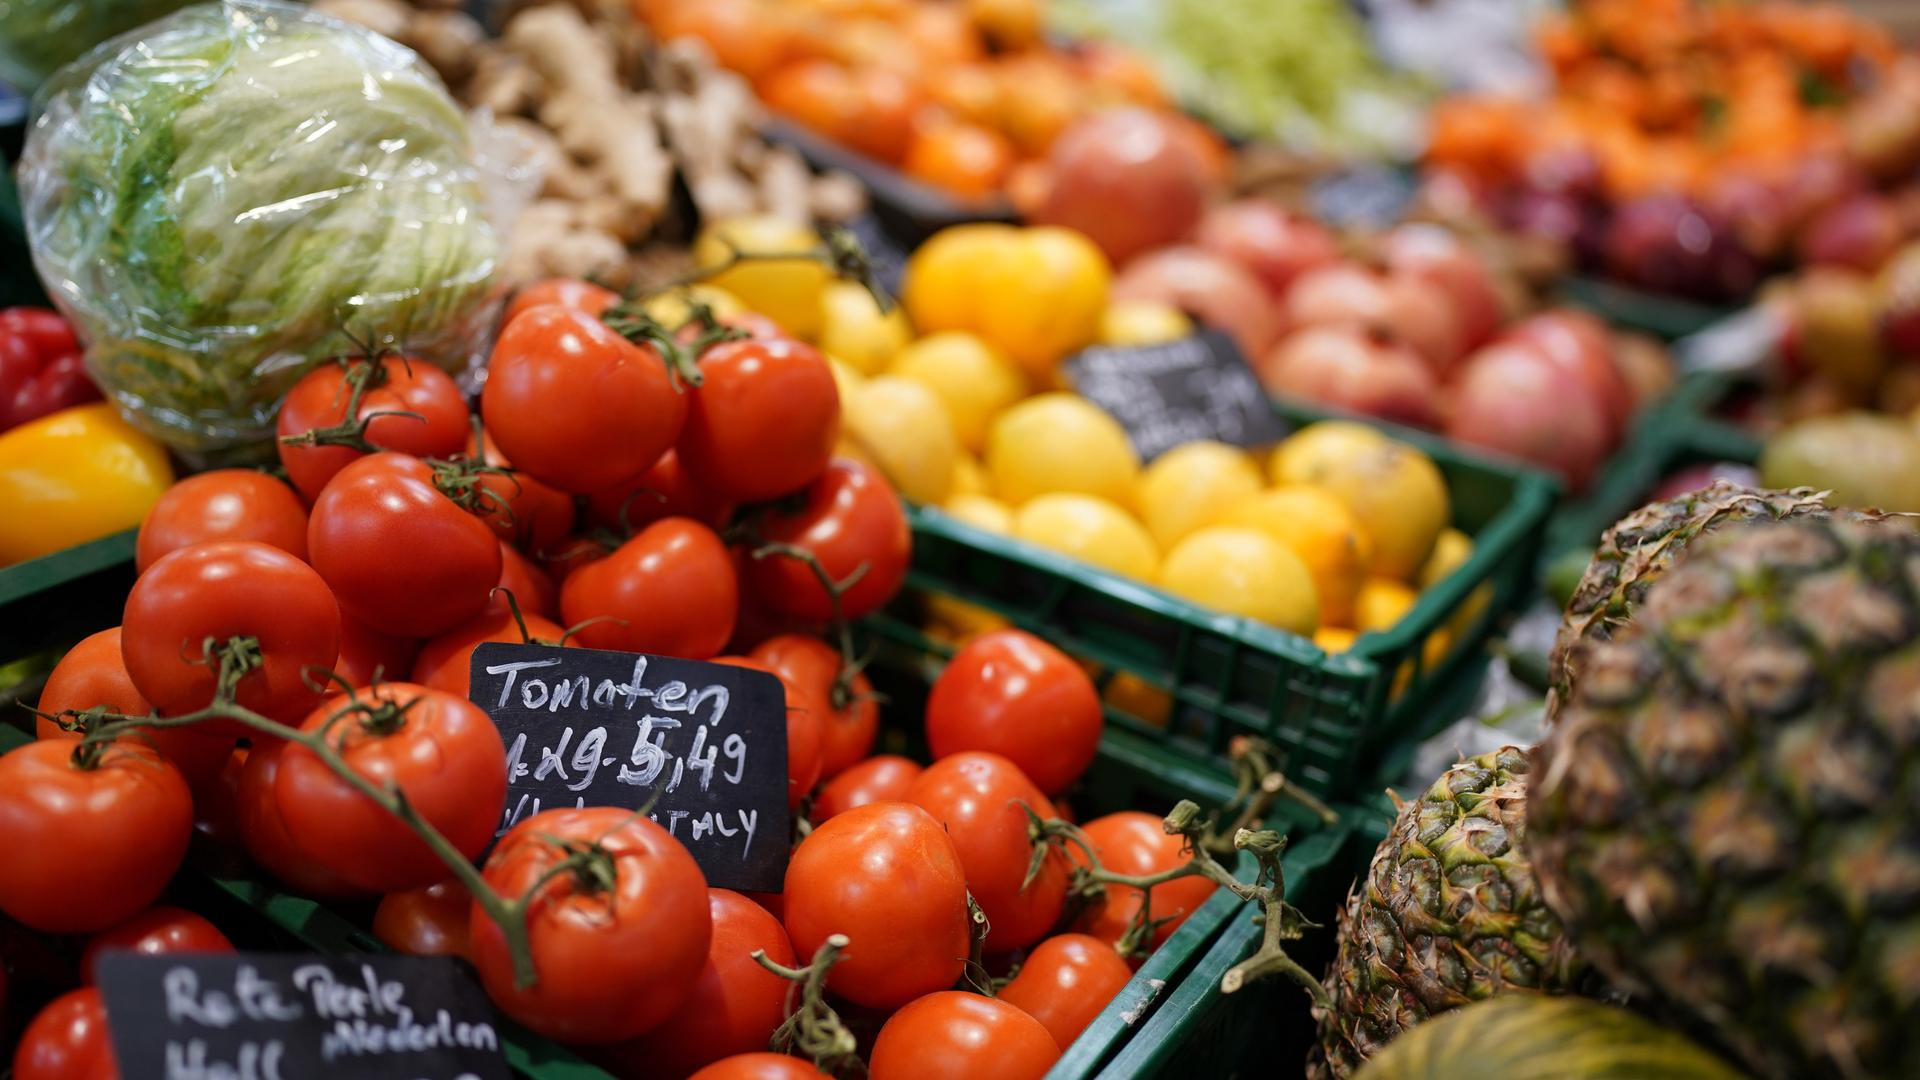 Tomaten, Ananas, Kopfsalat und verschiedene Früchte liegen in der Auslage eines kleinen Supermarktes.